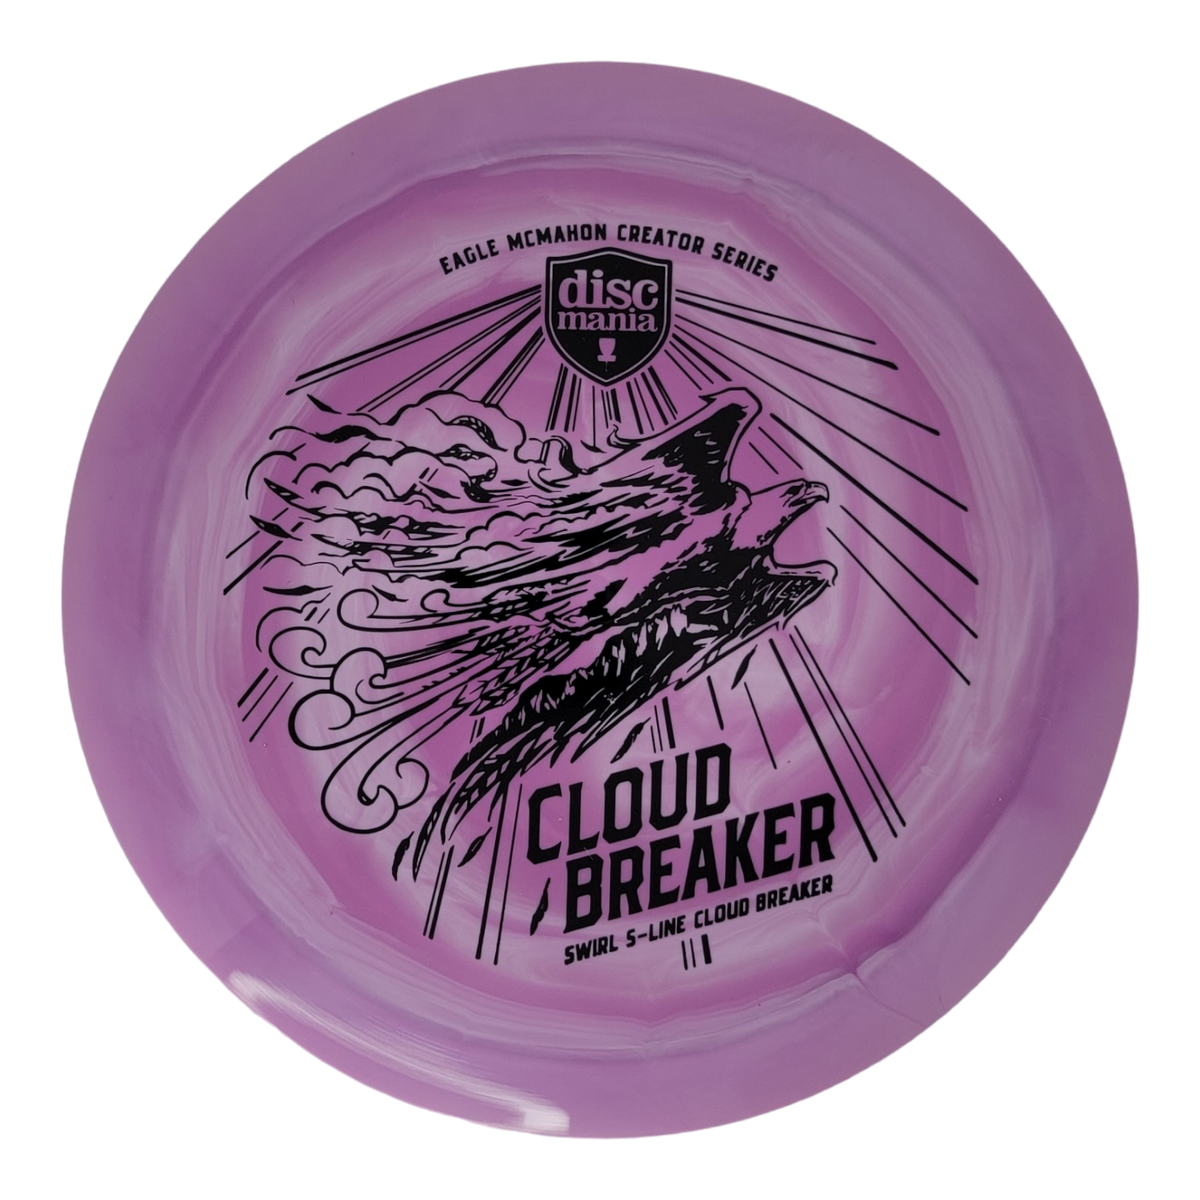 Discmania Signature Swirly S-Line Cloud Breaker - Eagle McMahon Final Run